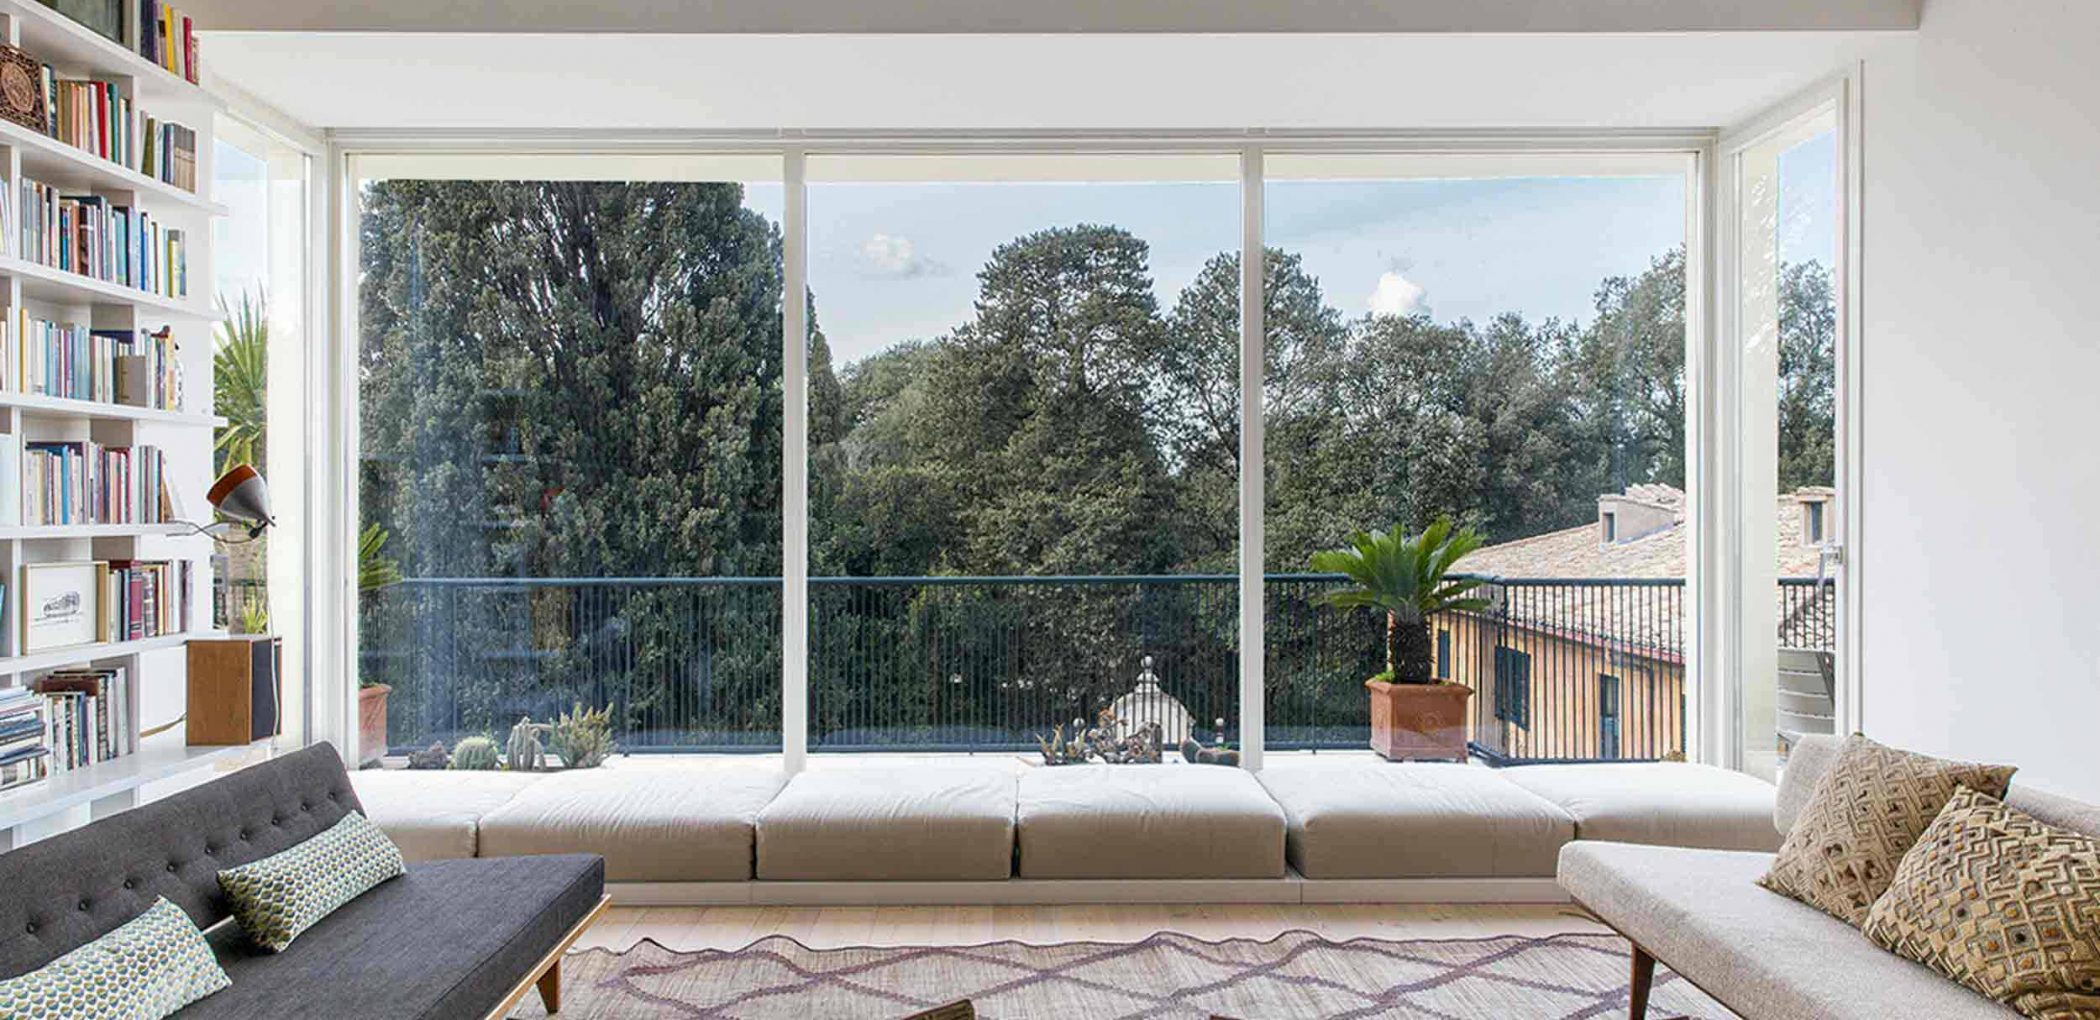 Image de couverture de la Villa Roma avec fenêtres fixes en bois laqué blanc